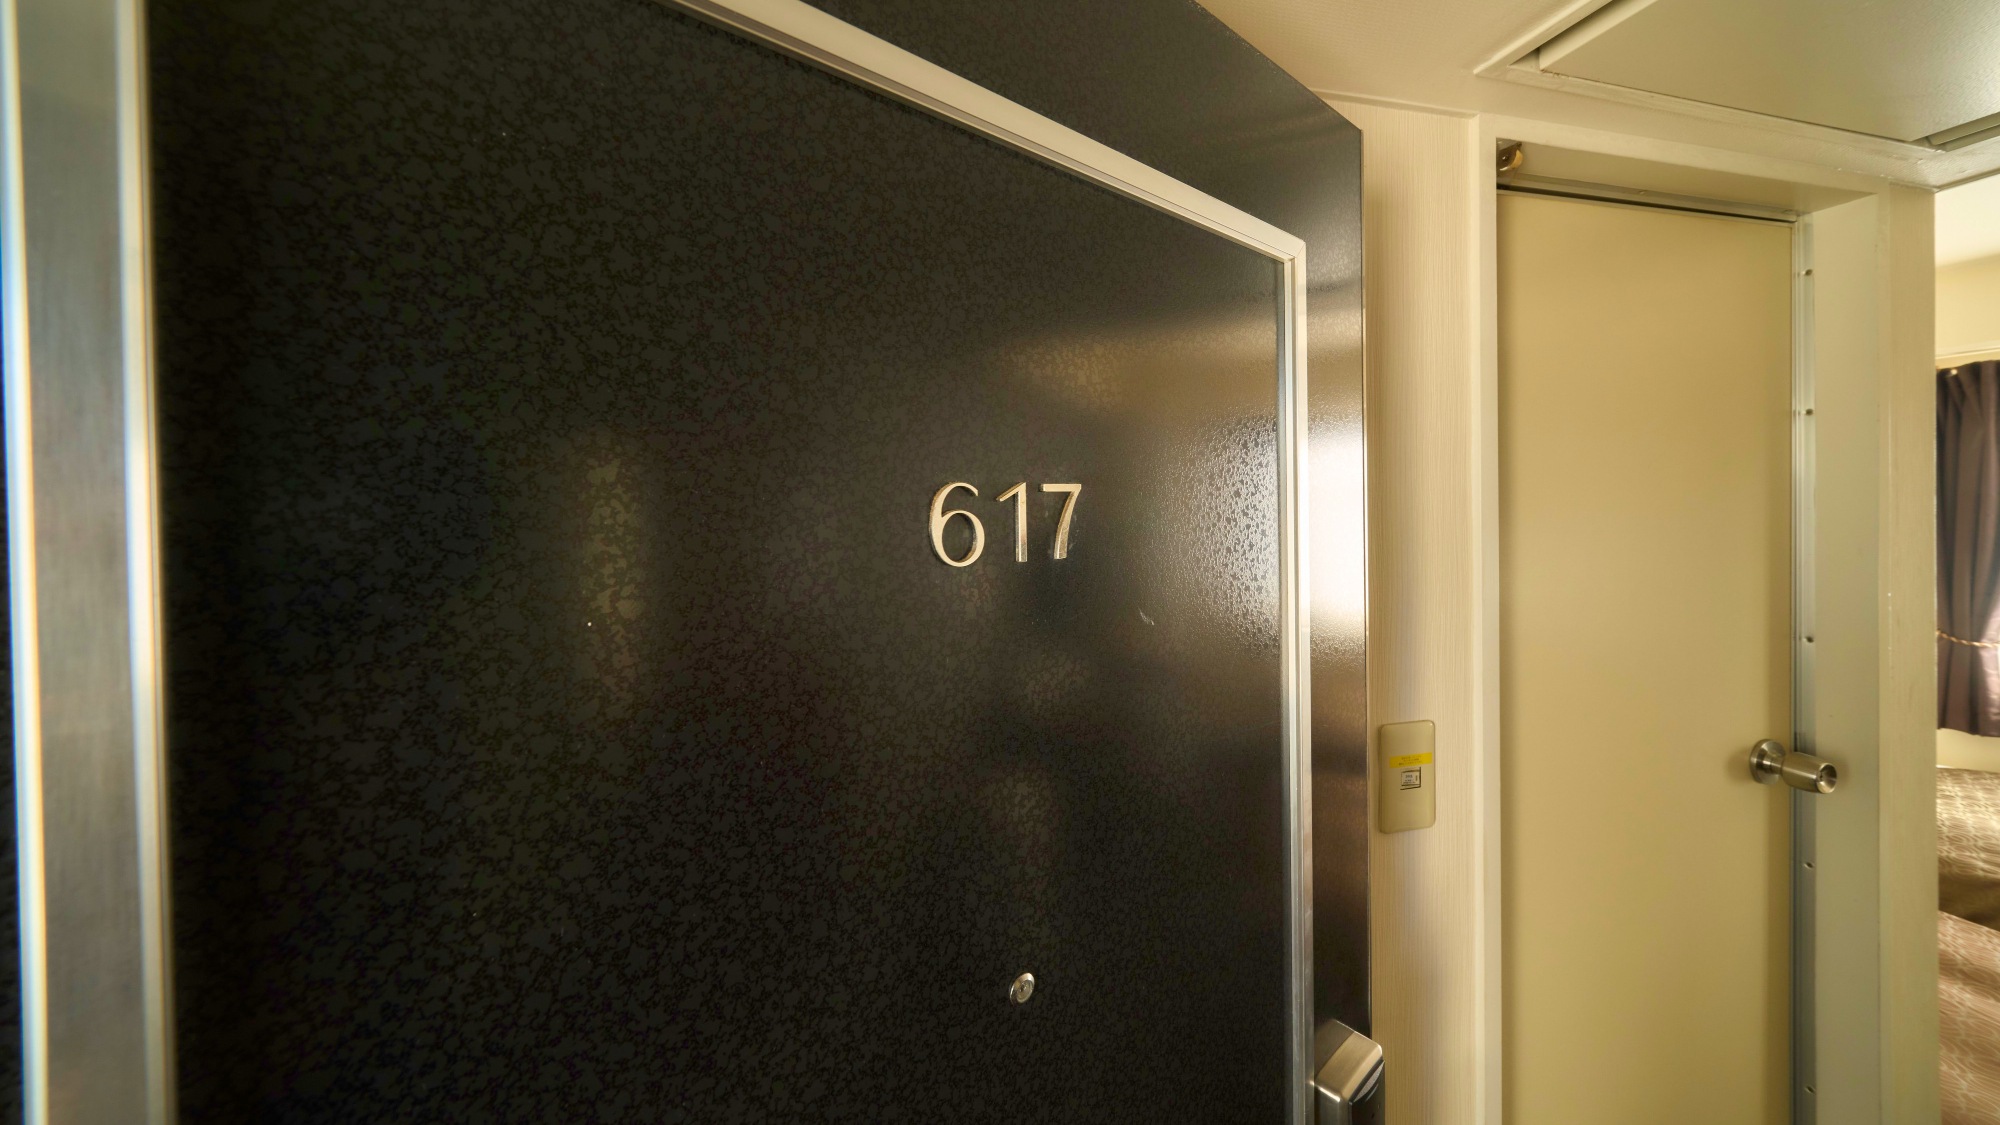 ・【客室】ルーム617のお部屋です